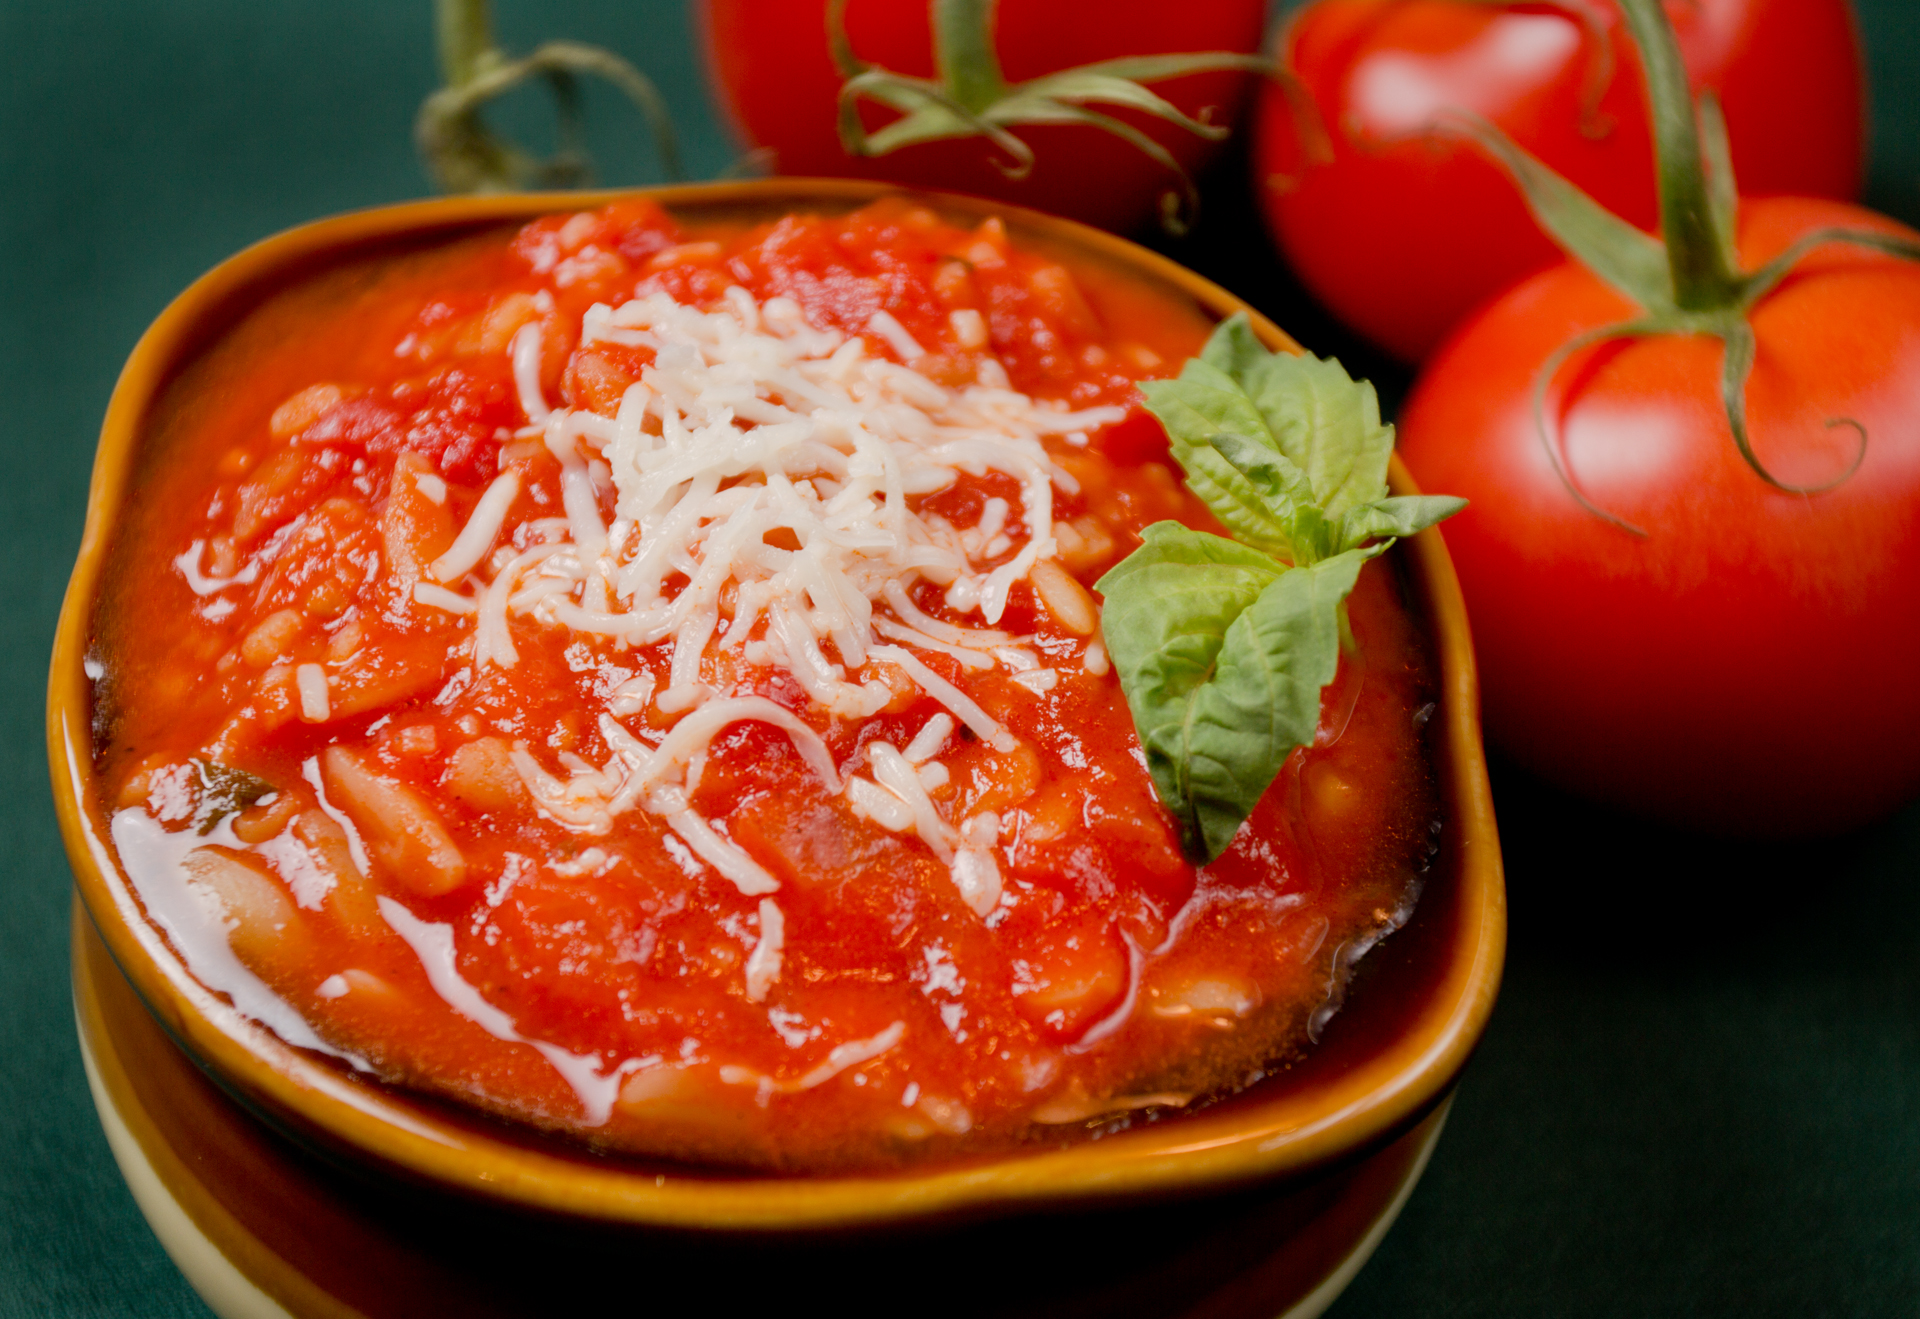 Orzo and Tomato Soup